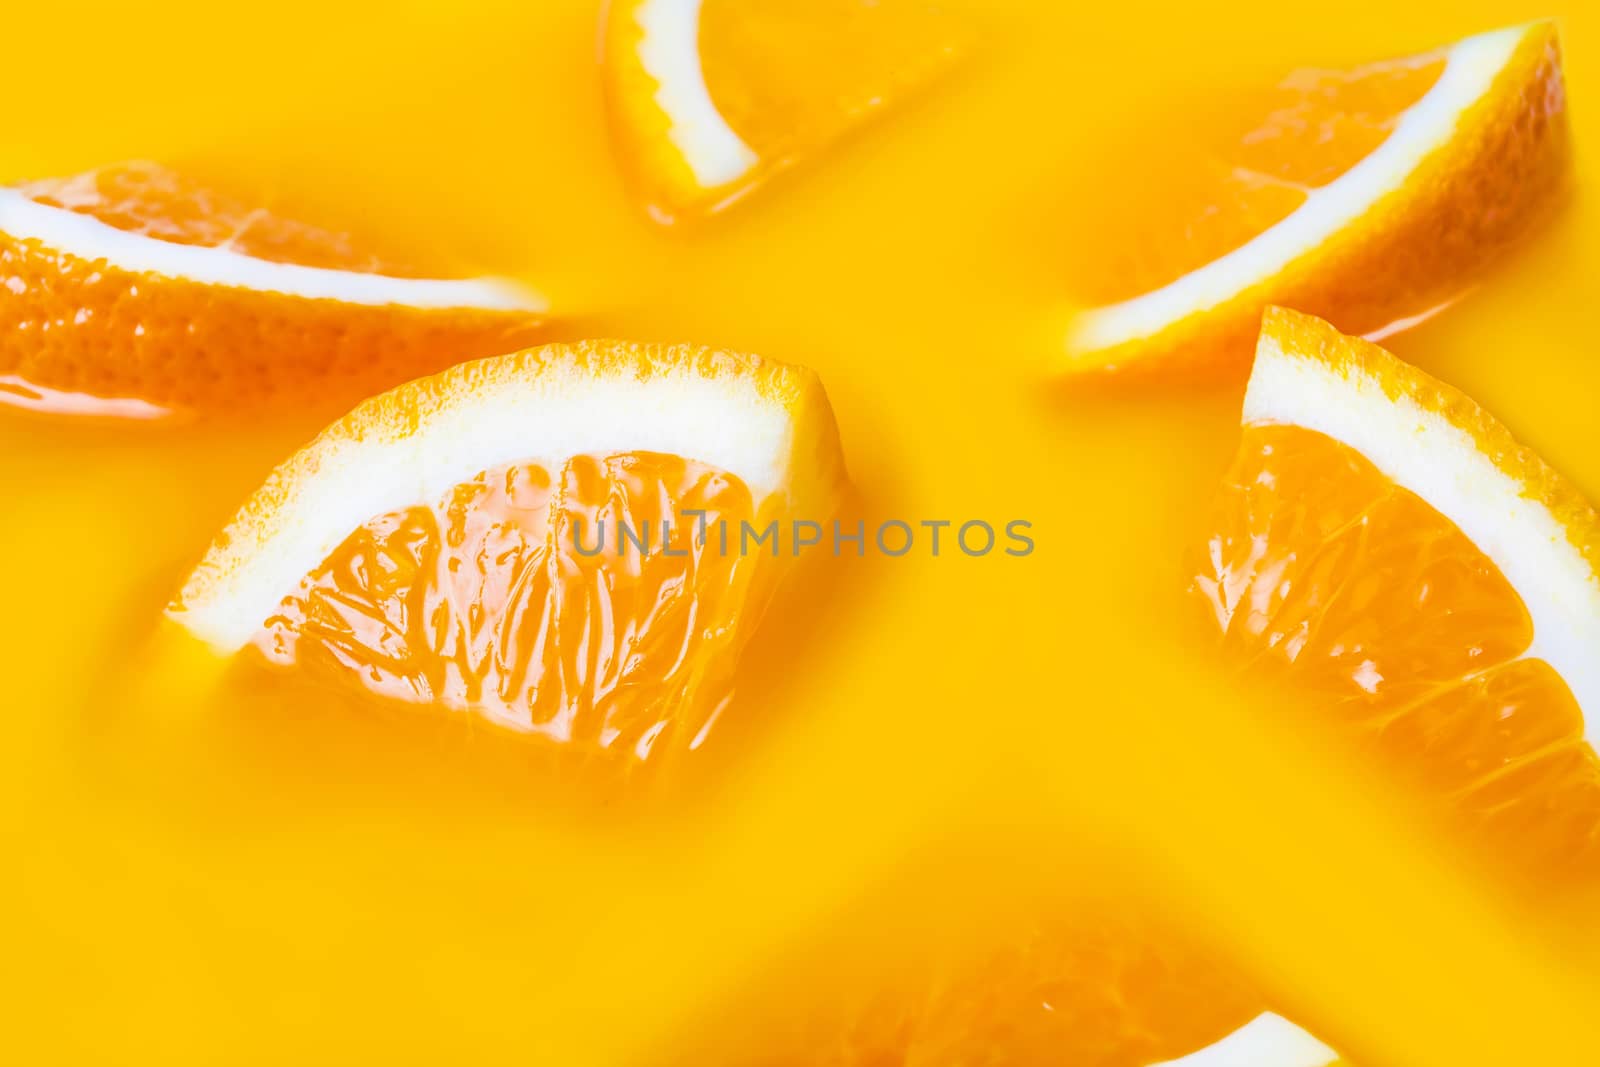 Many fresh a slice of orange close-up on yellow background